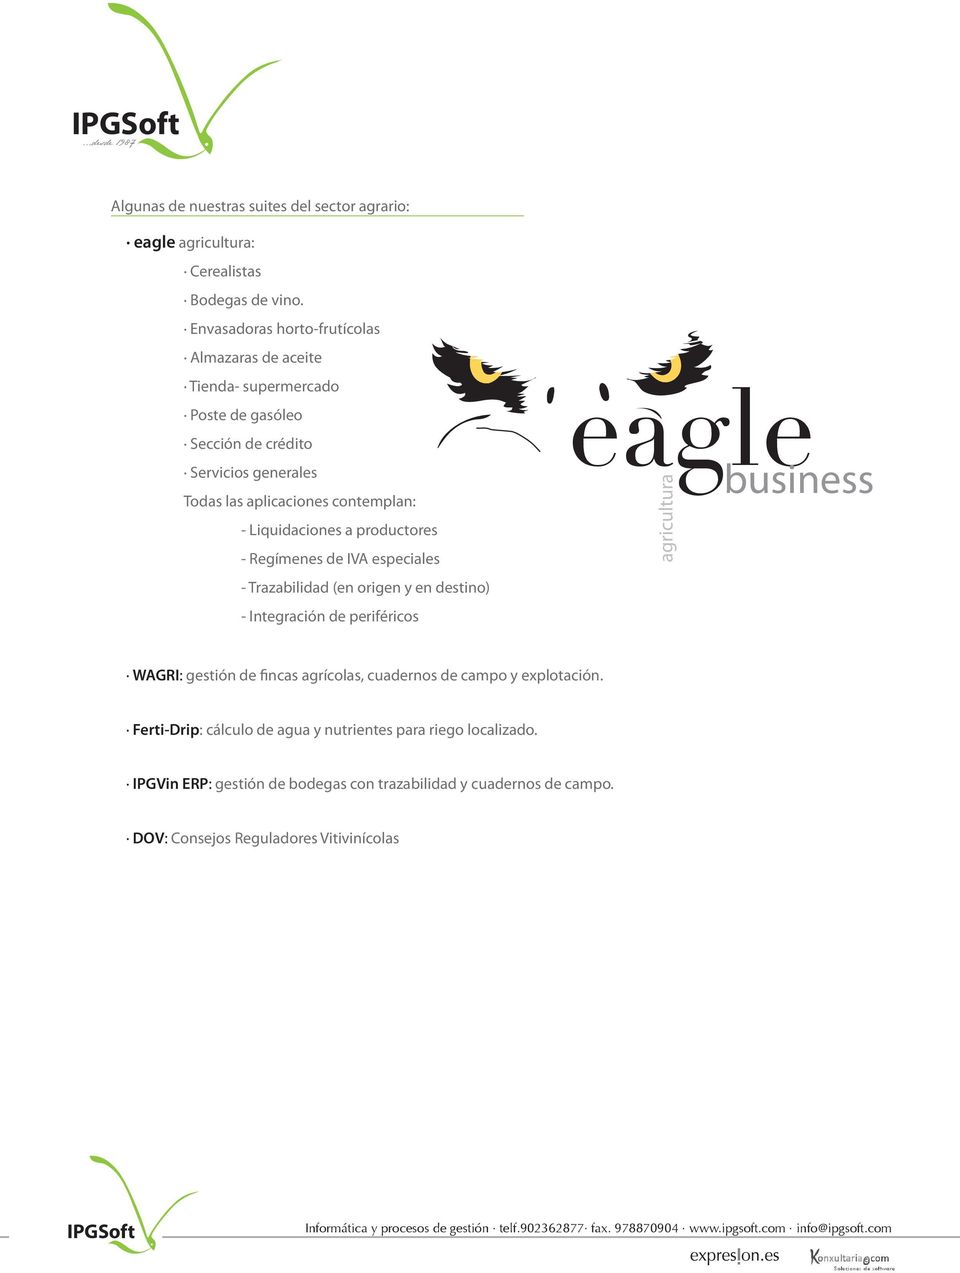 Liquidaciones a productores - Regímenes de IVA especiales - Trazabilidad (en origen y en destino) - Integración de periféricos eagle business agricultura WAGRI: